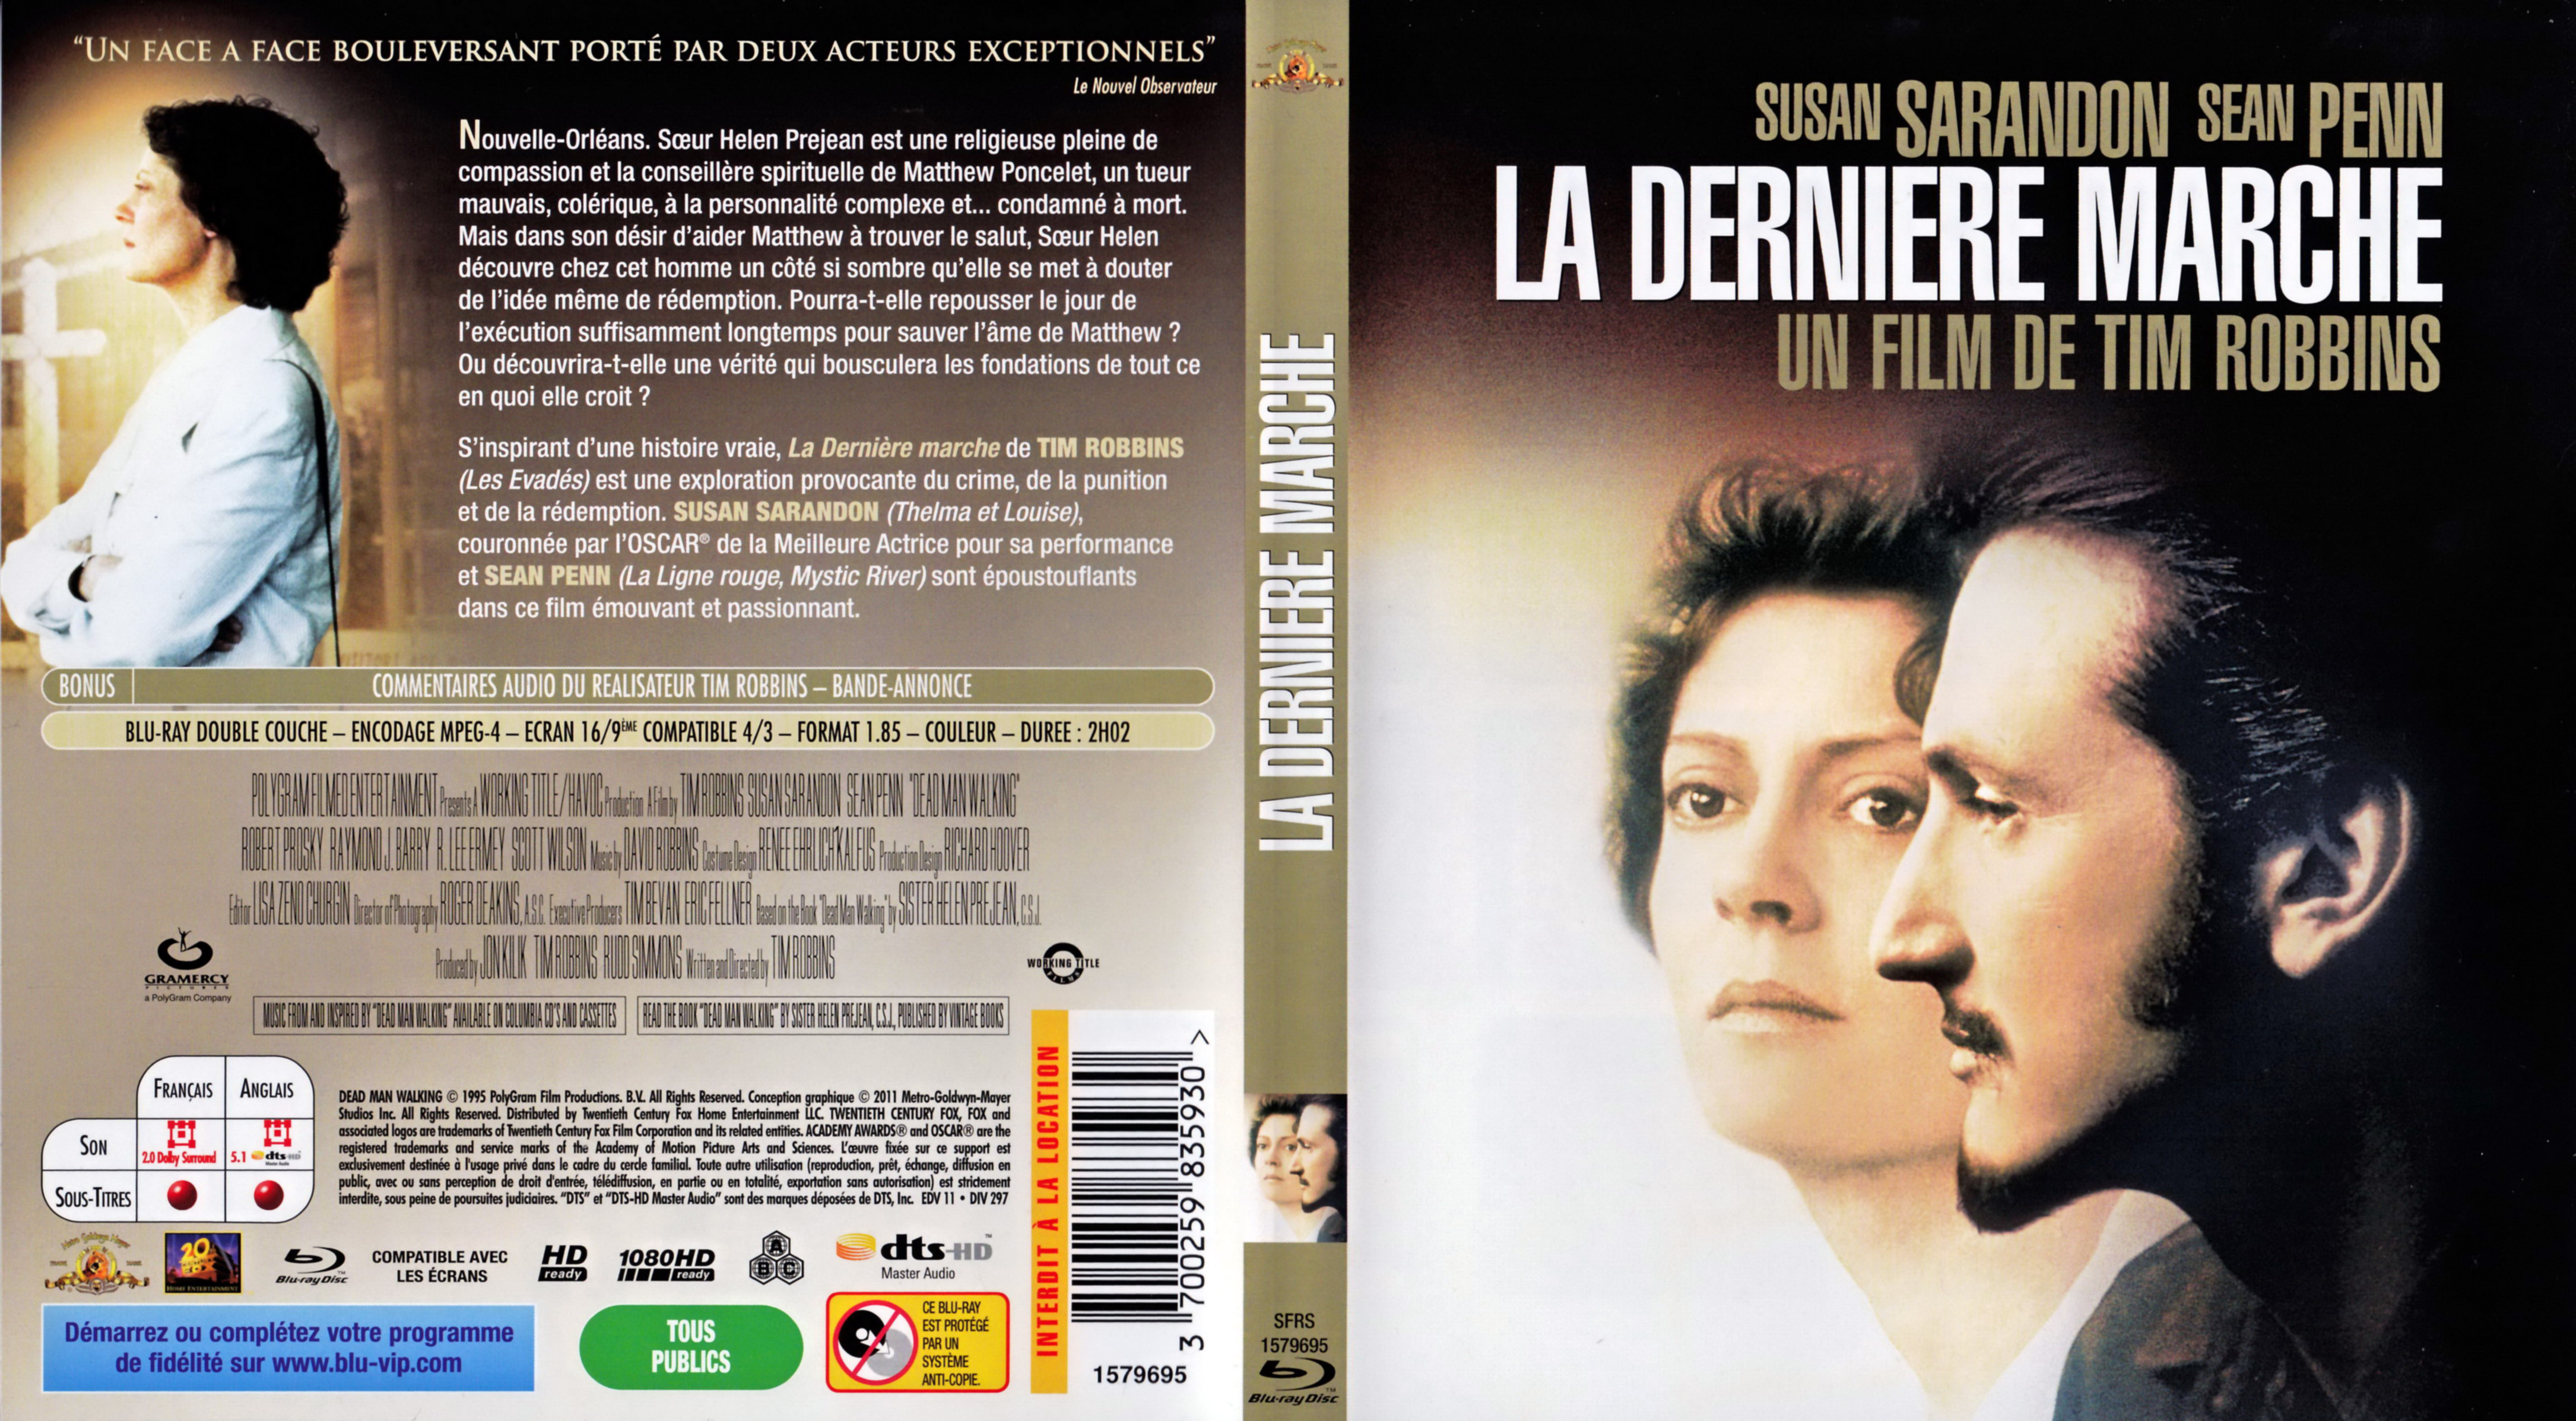 Jaquette Dvd De La Derniere Marche Blu Ray Cinéma Passion